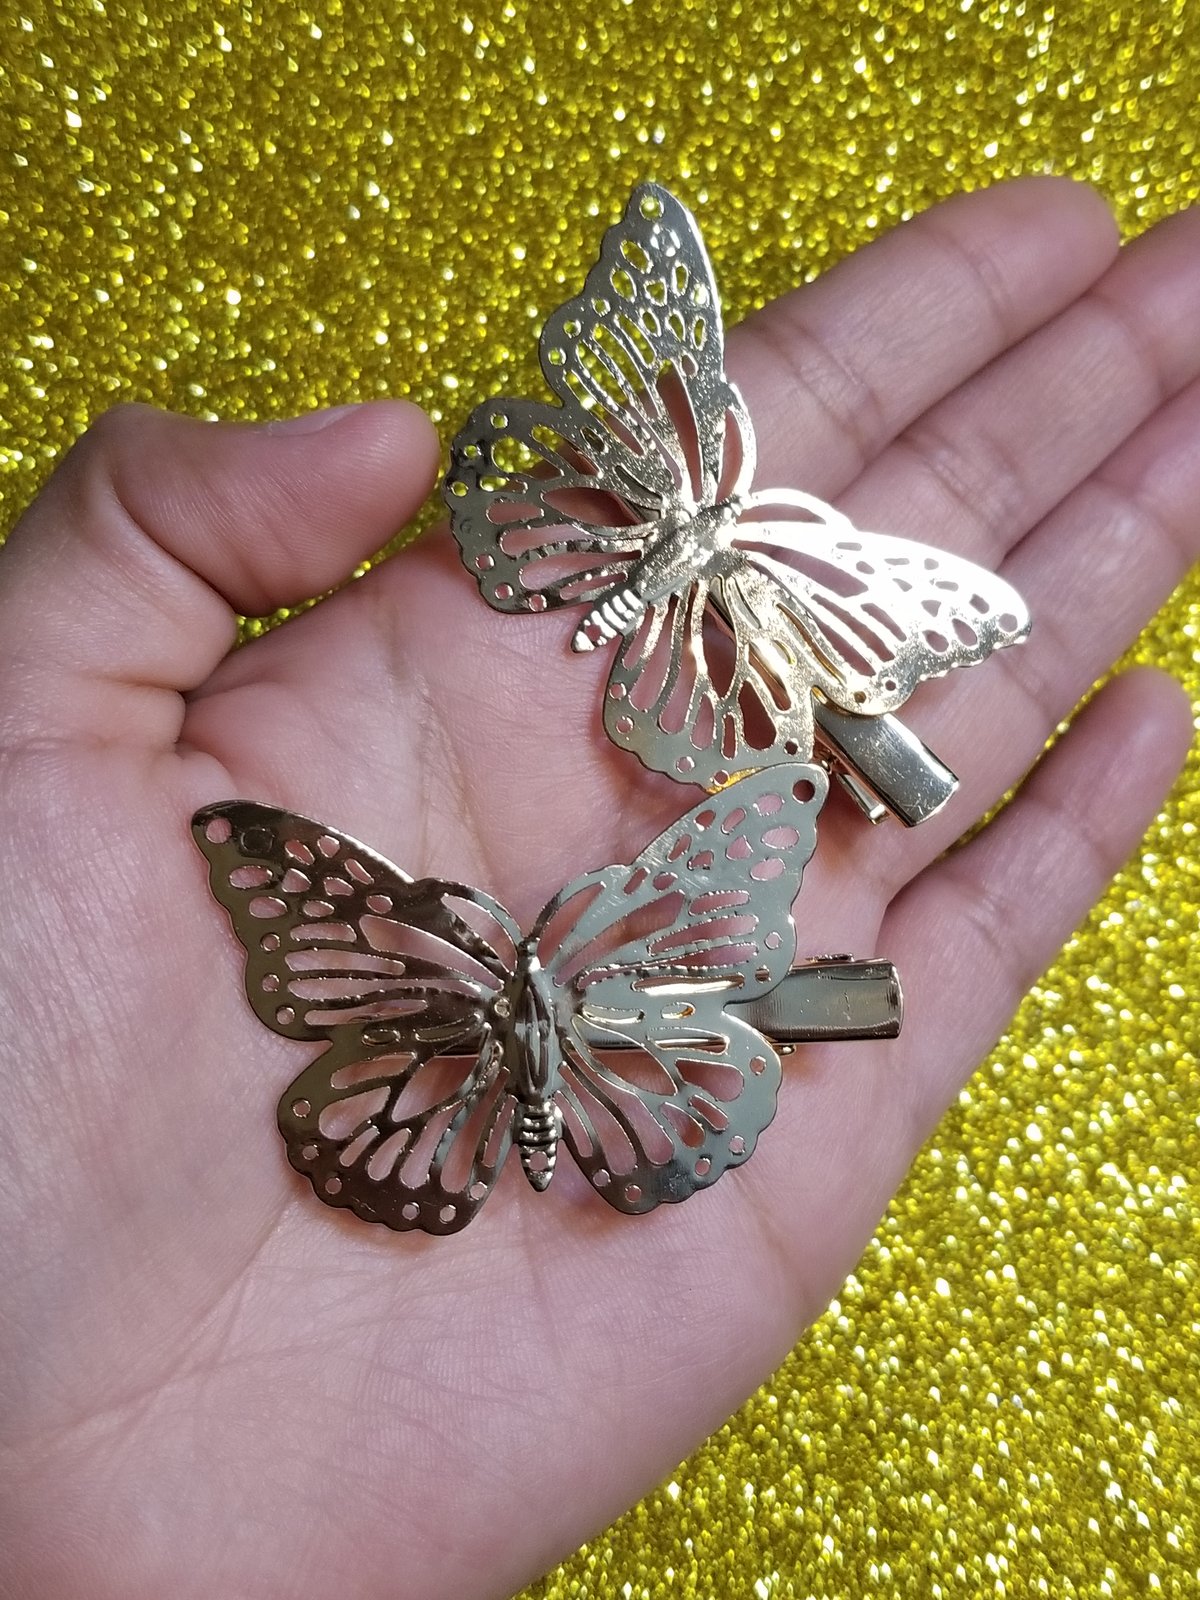 Gold Butterfly clipsðŸ¦‹